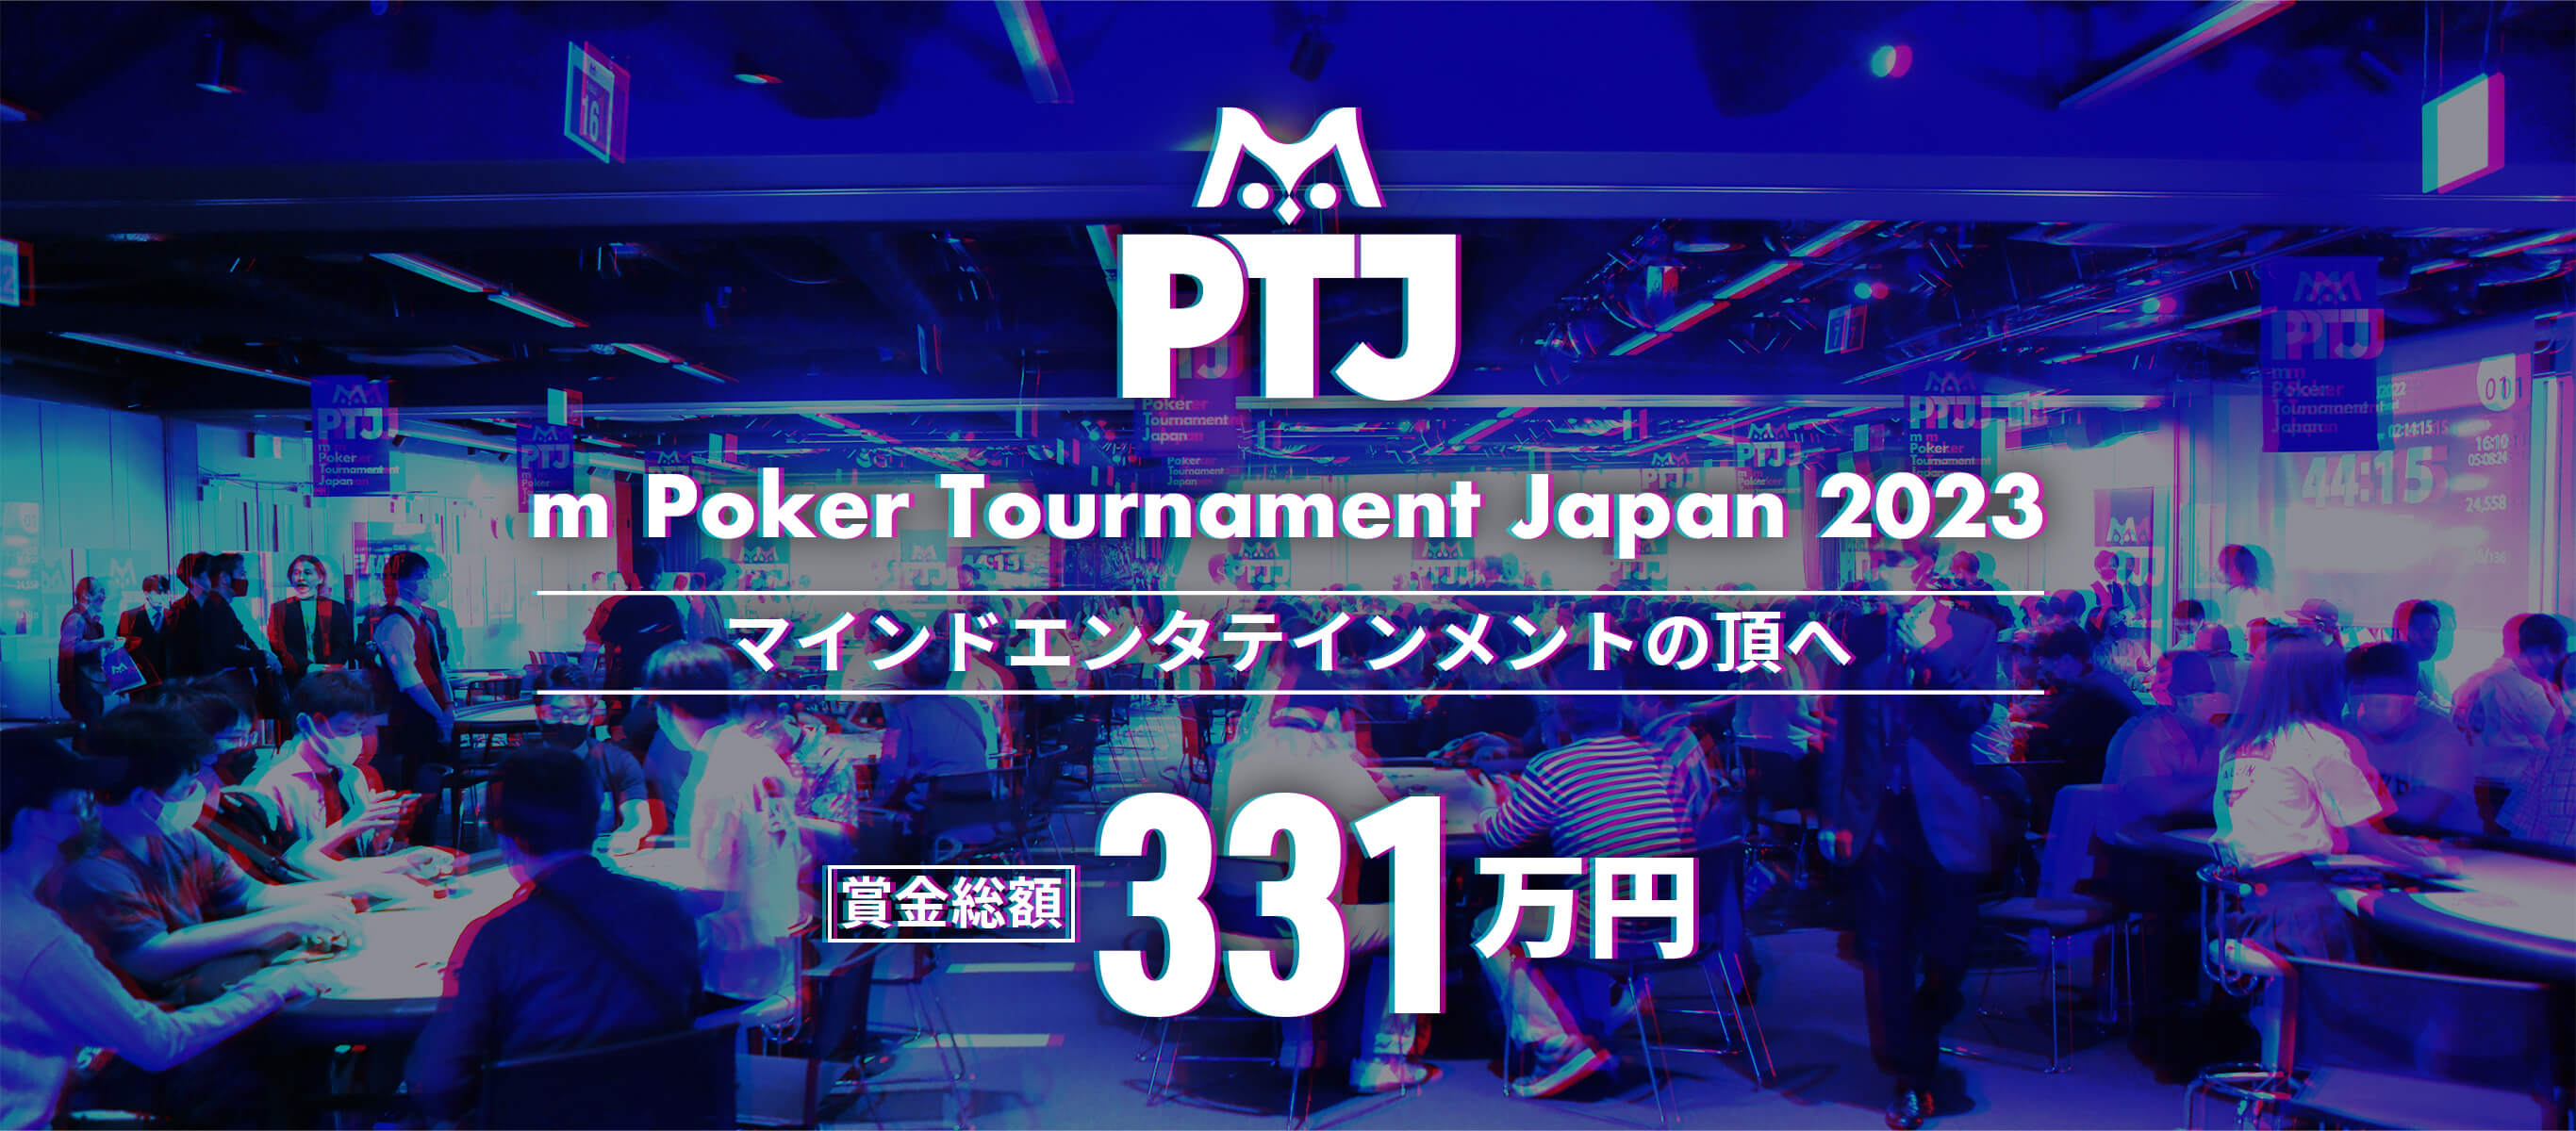 m Poker Tournament Japan 2022 mに関わる全ての人のためのトーナメントがついに開催 賞金総額 331万円